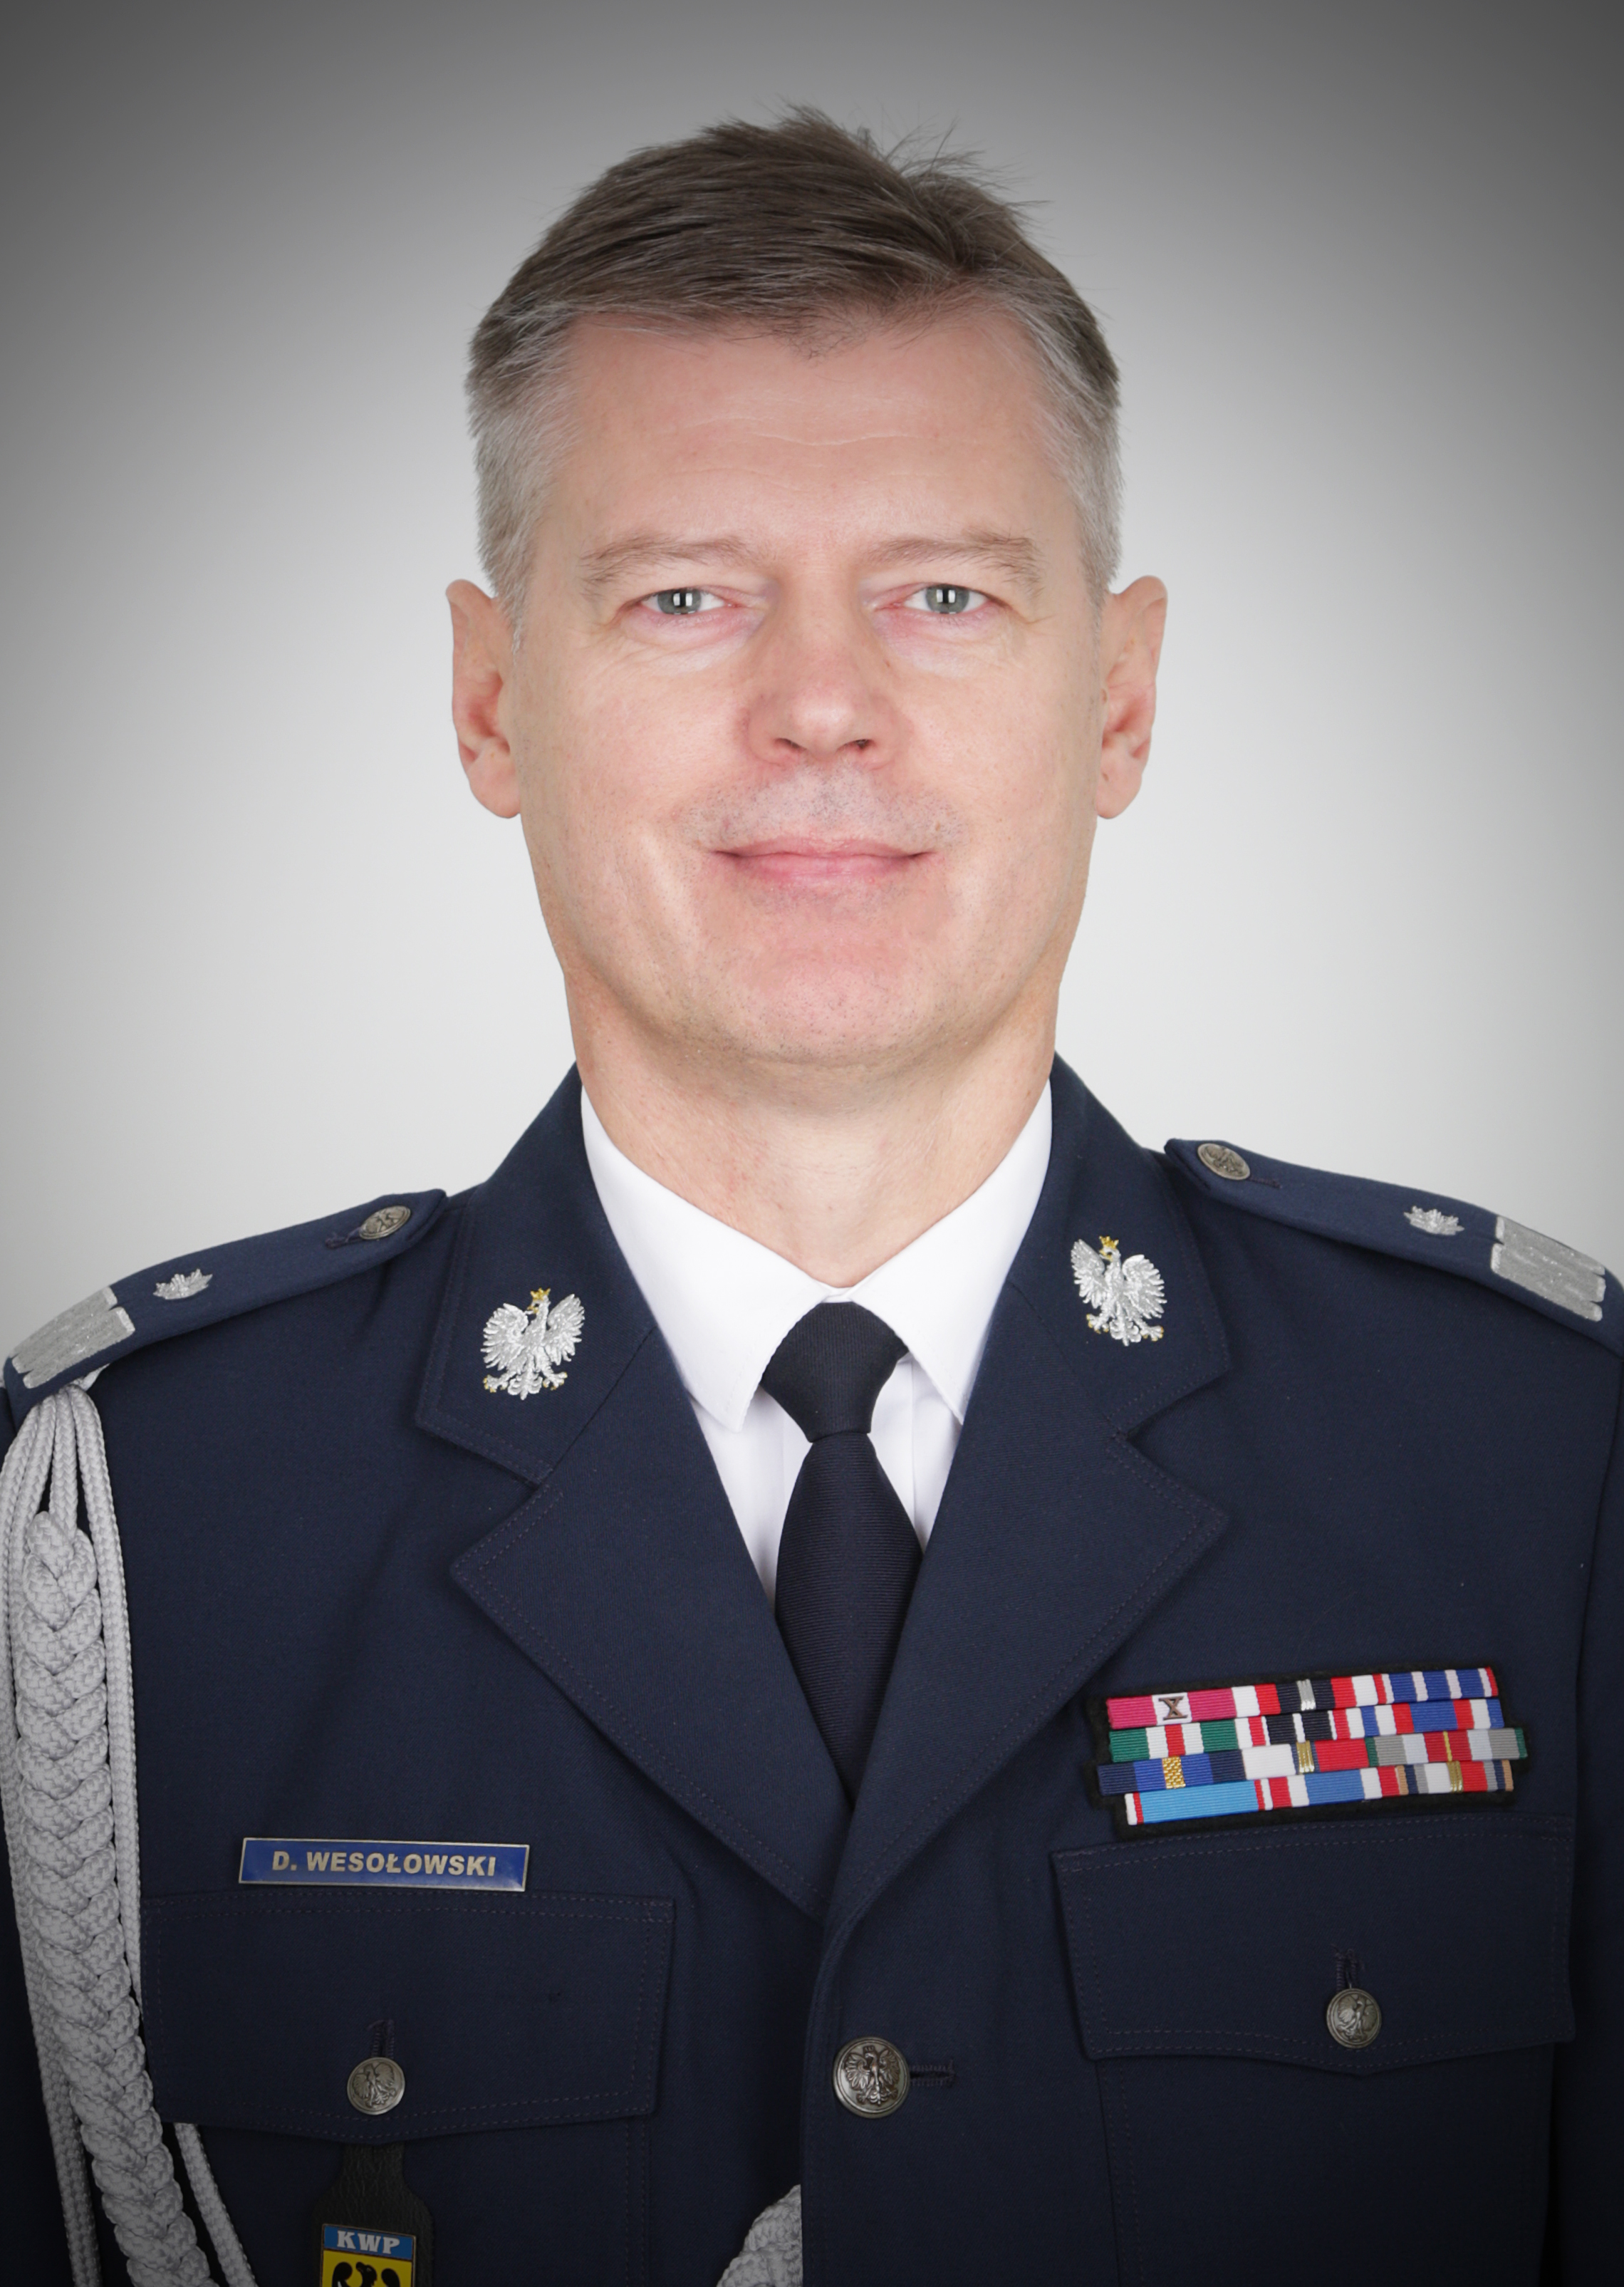 Zdjęcie przedstawiające Komendanta Wojewódzkiego Policji we Wrocławiu nadinspektora Dariusza Wesołowskiego